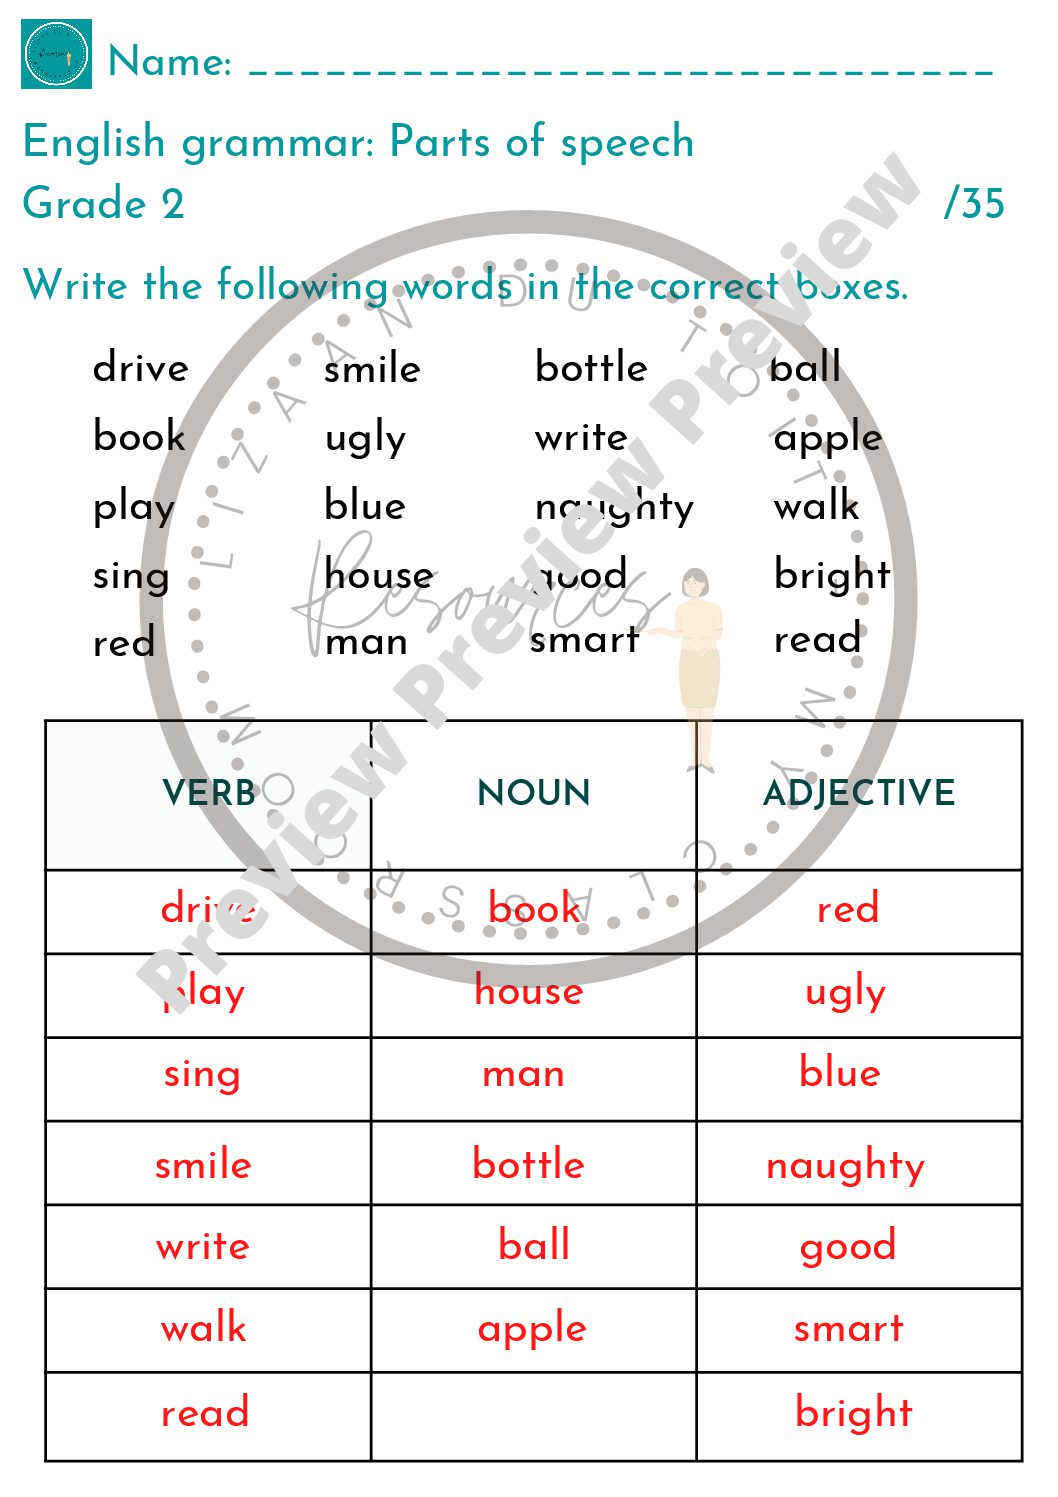 english-grammar-parts-of-speech-verbs-nouns-and-adjectives-teacha